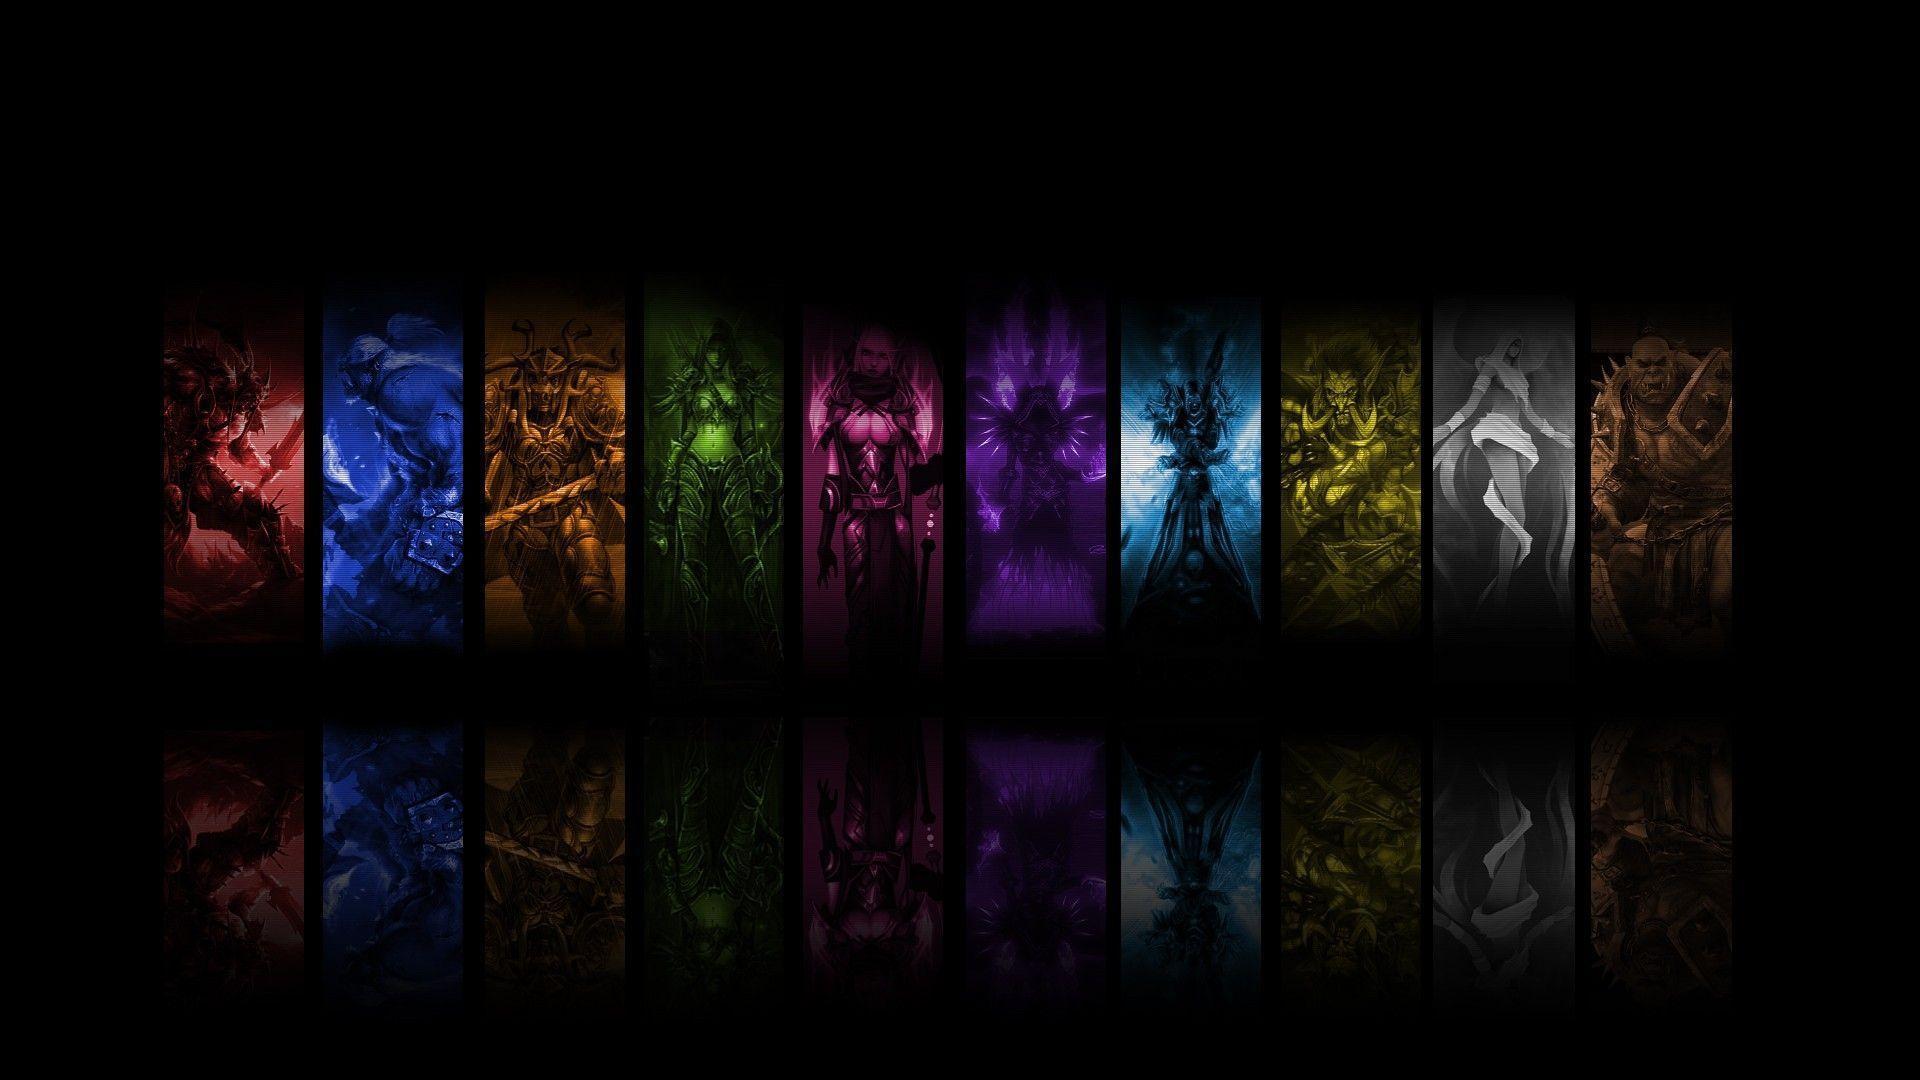 World Of Warcraft Rogue Wallpaper